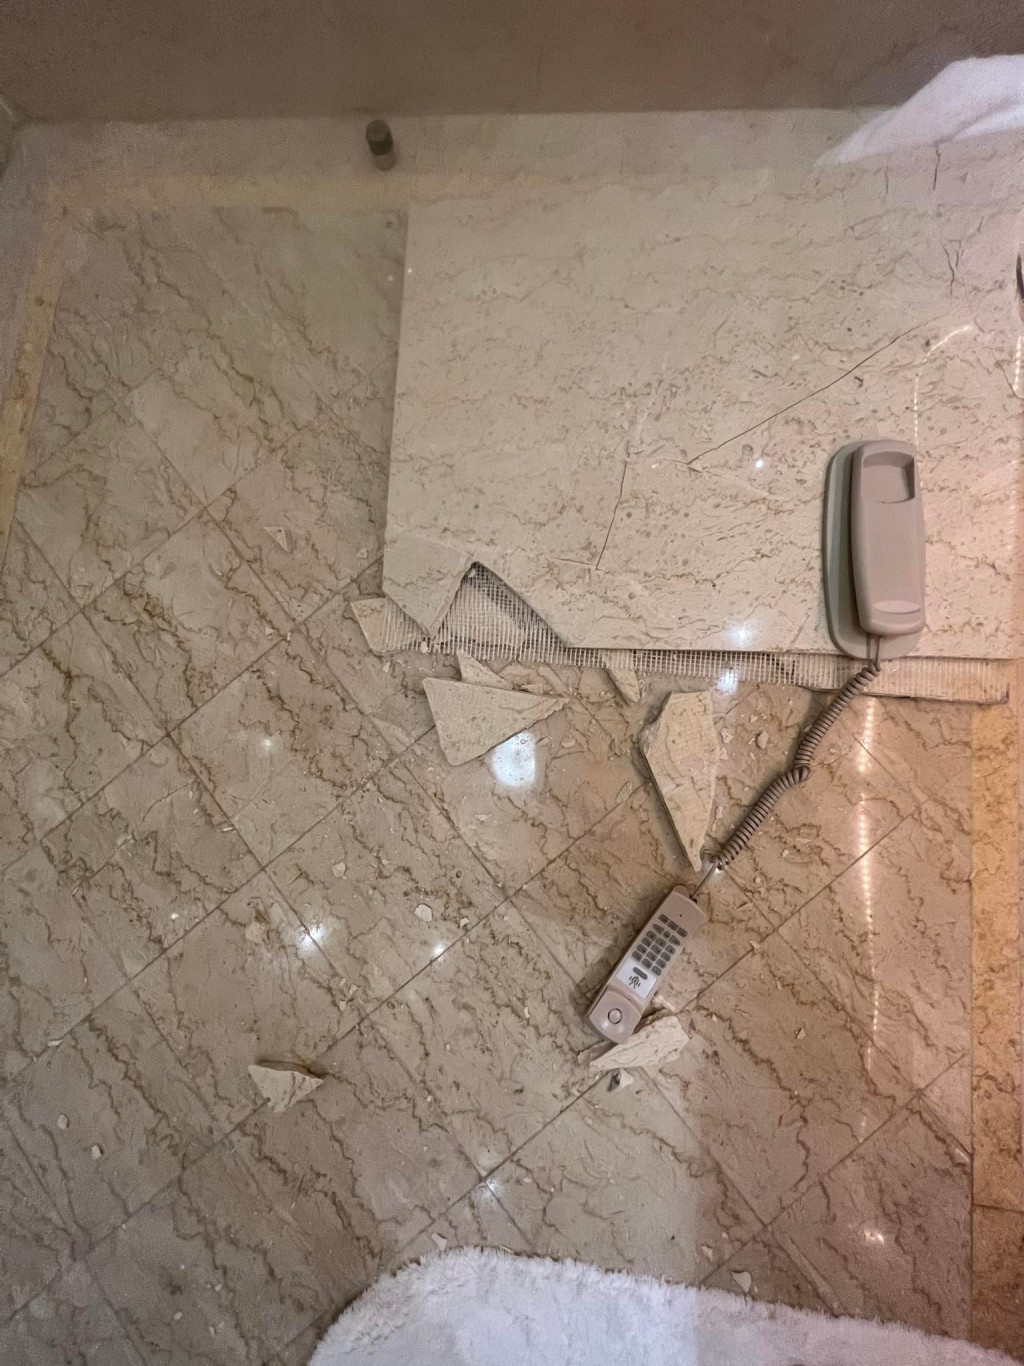 碎片连同浴室电话散落一地。「澳门高登起底组」网民图片